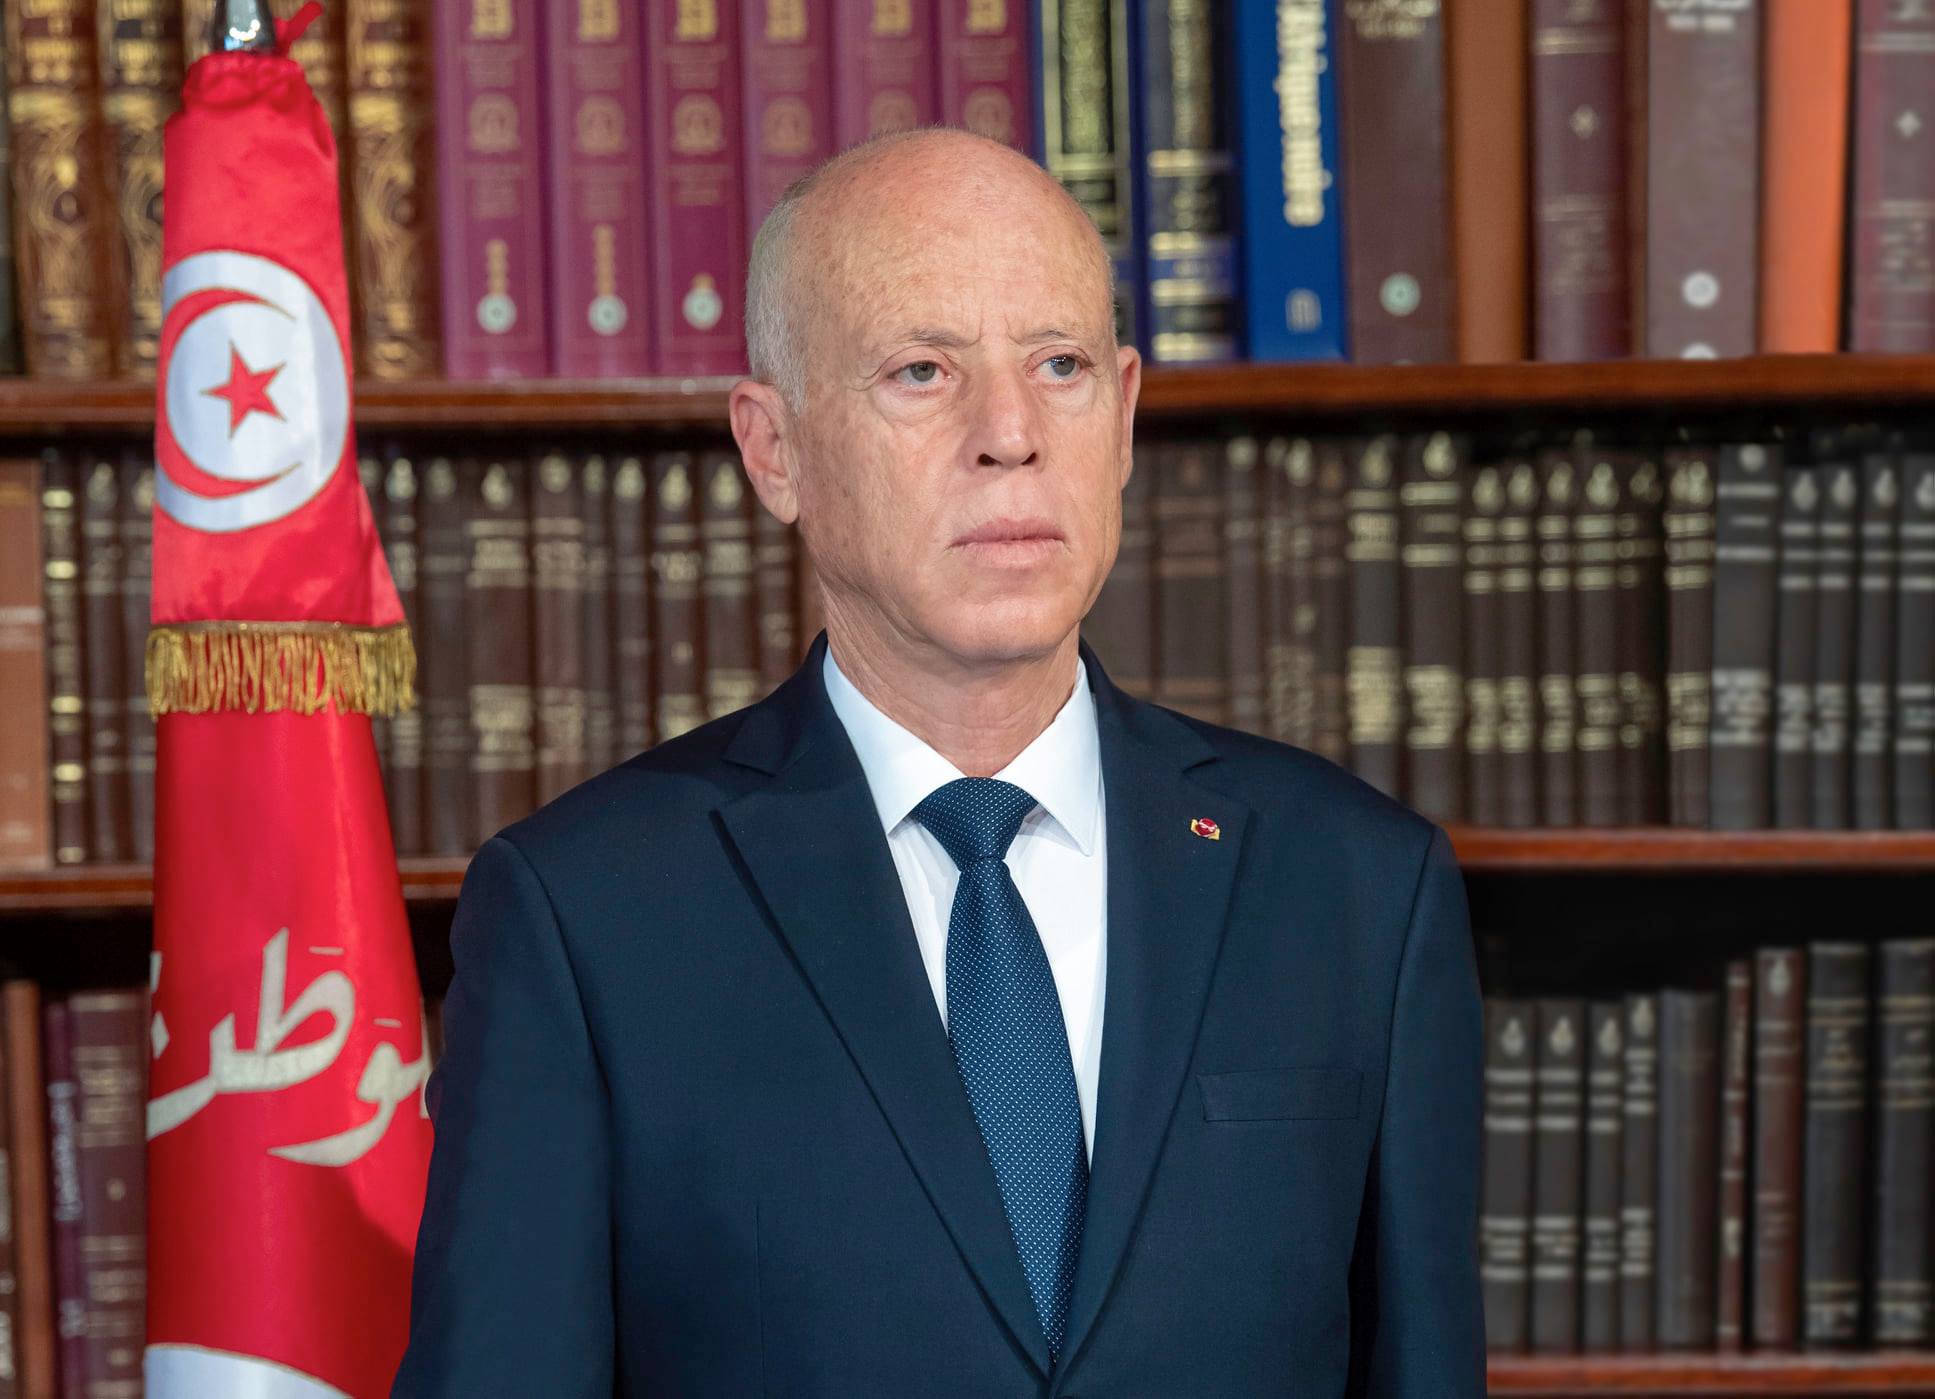 قيس سعيد: أريد أن أبين للعالم أن تونس تمر بظروف وتدابير استثنائية نتيجة لجائحة سياسية لا تزال قائمة..